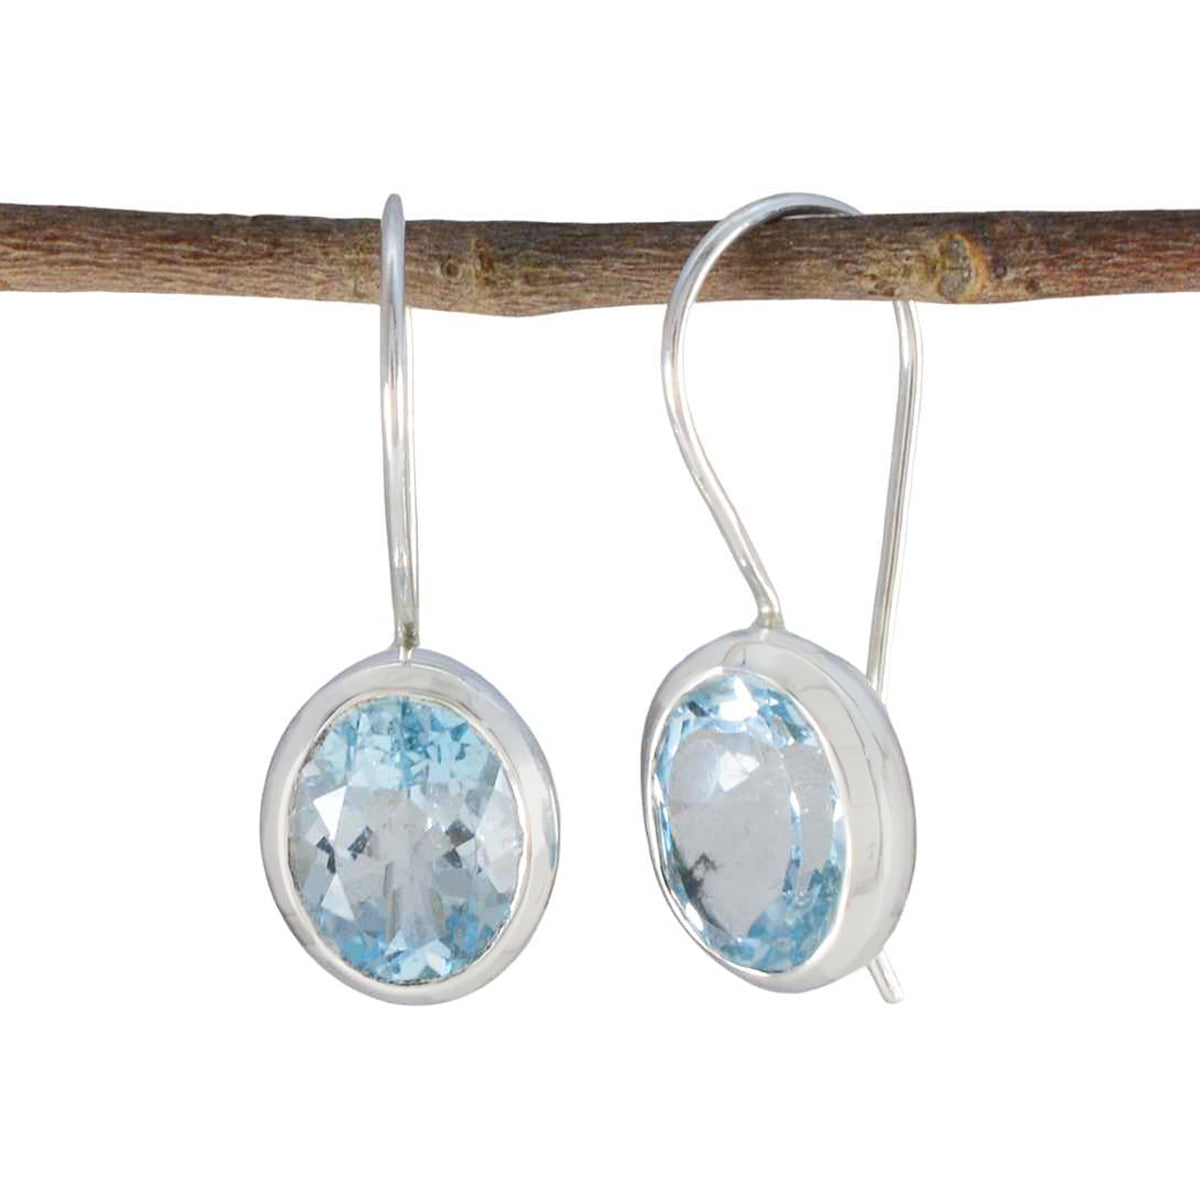 Riyo Beddable Sterling Silber Ohrring für Damsel Blauer Topas-Ohrring, Lünettenfassung, blauer Ohrring, baumelnder Ohrring